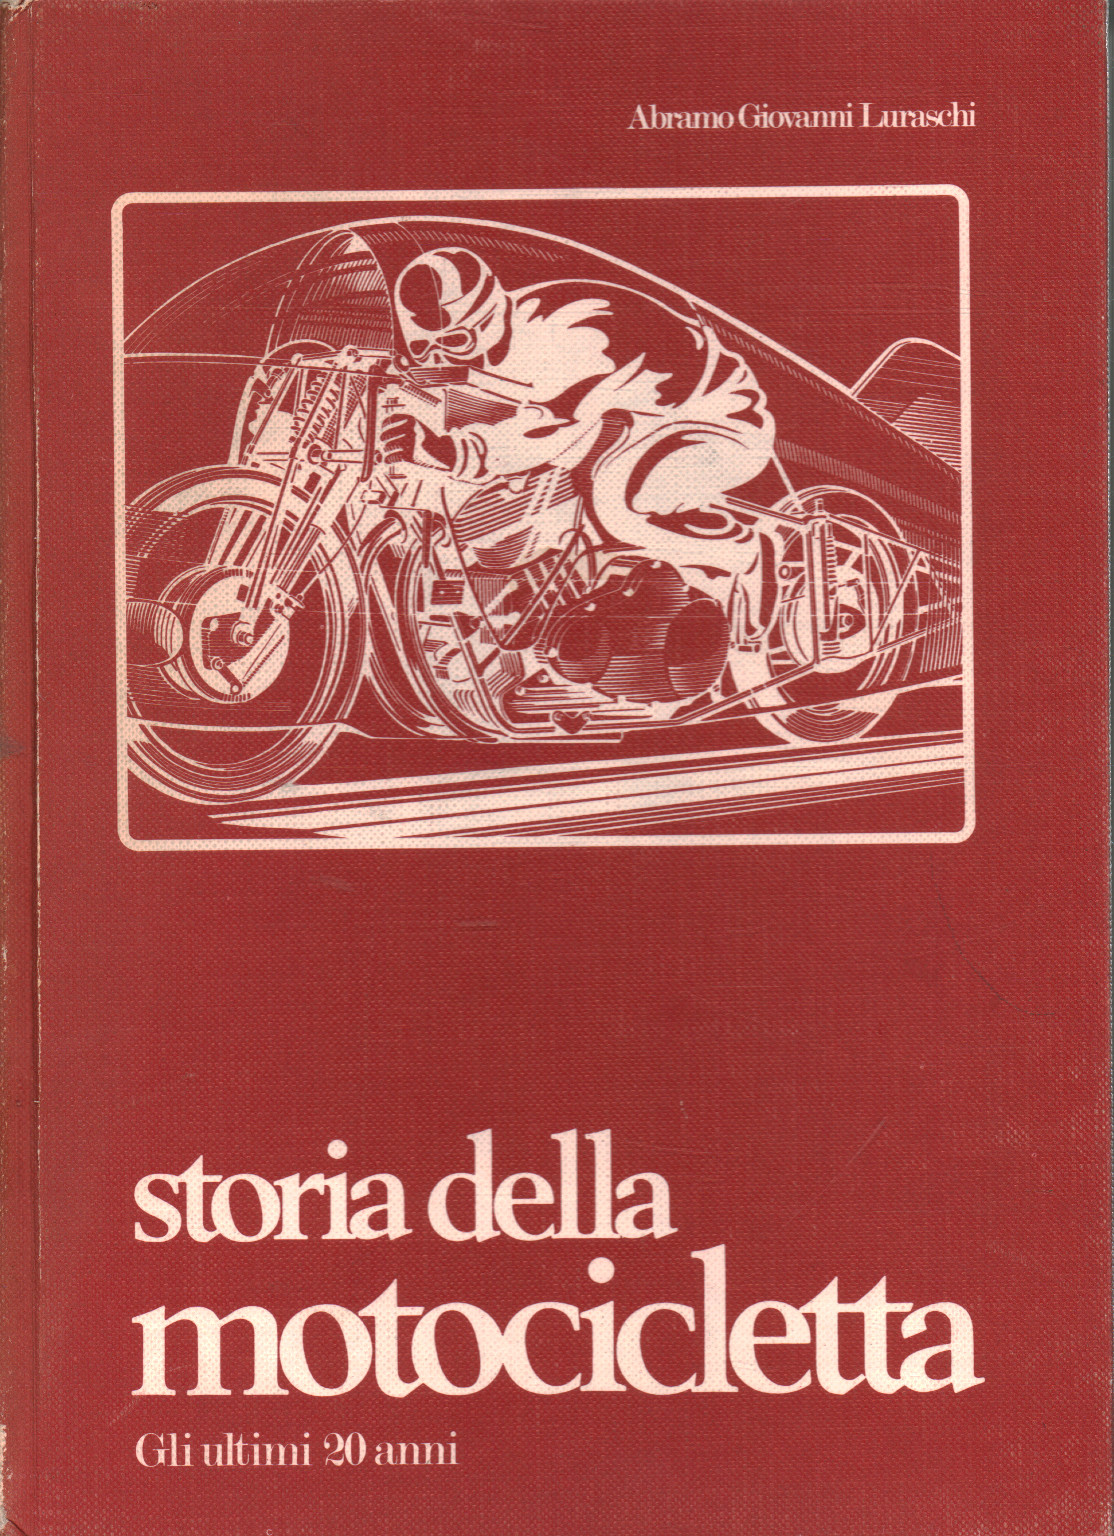 Historia de la moto. Los últimos 20 años, Abramo Giovanni Luraschi